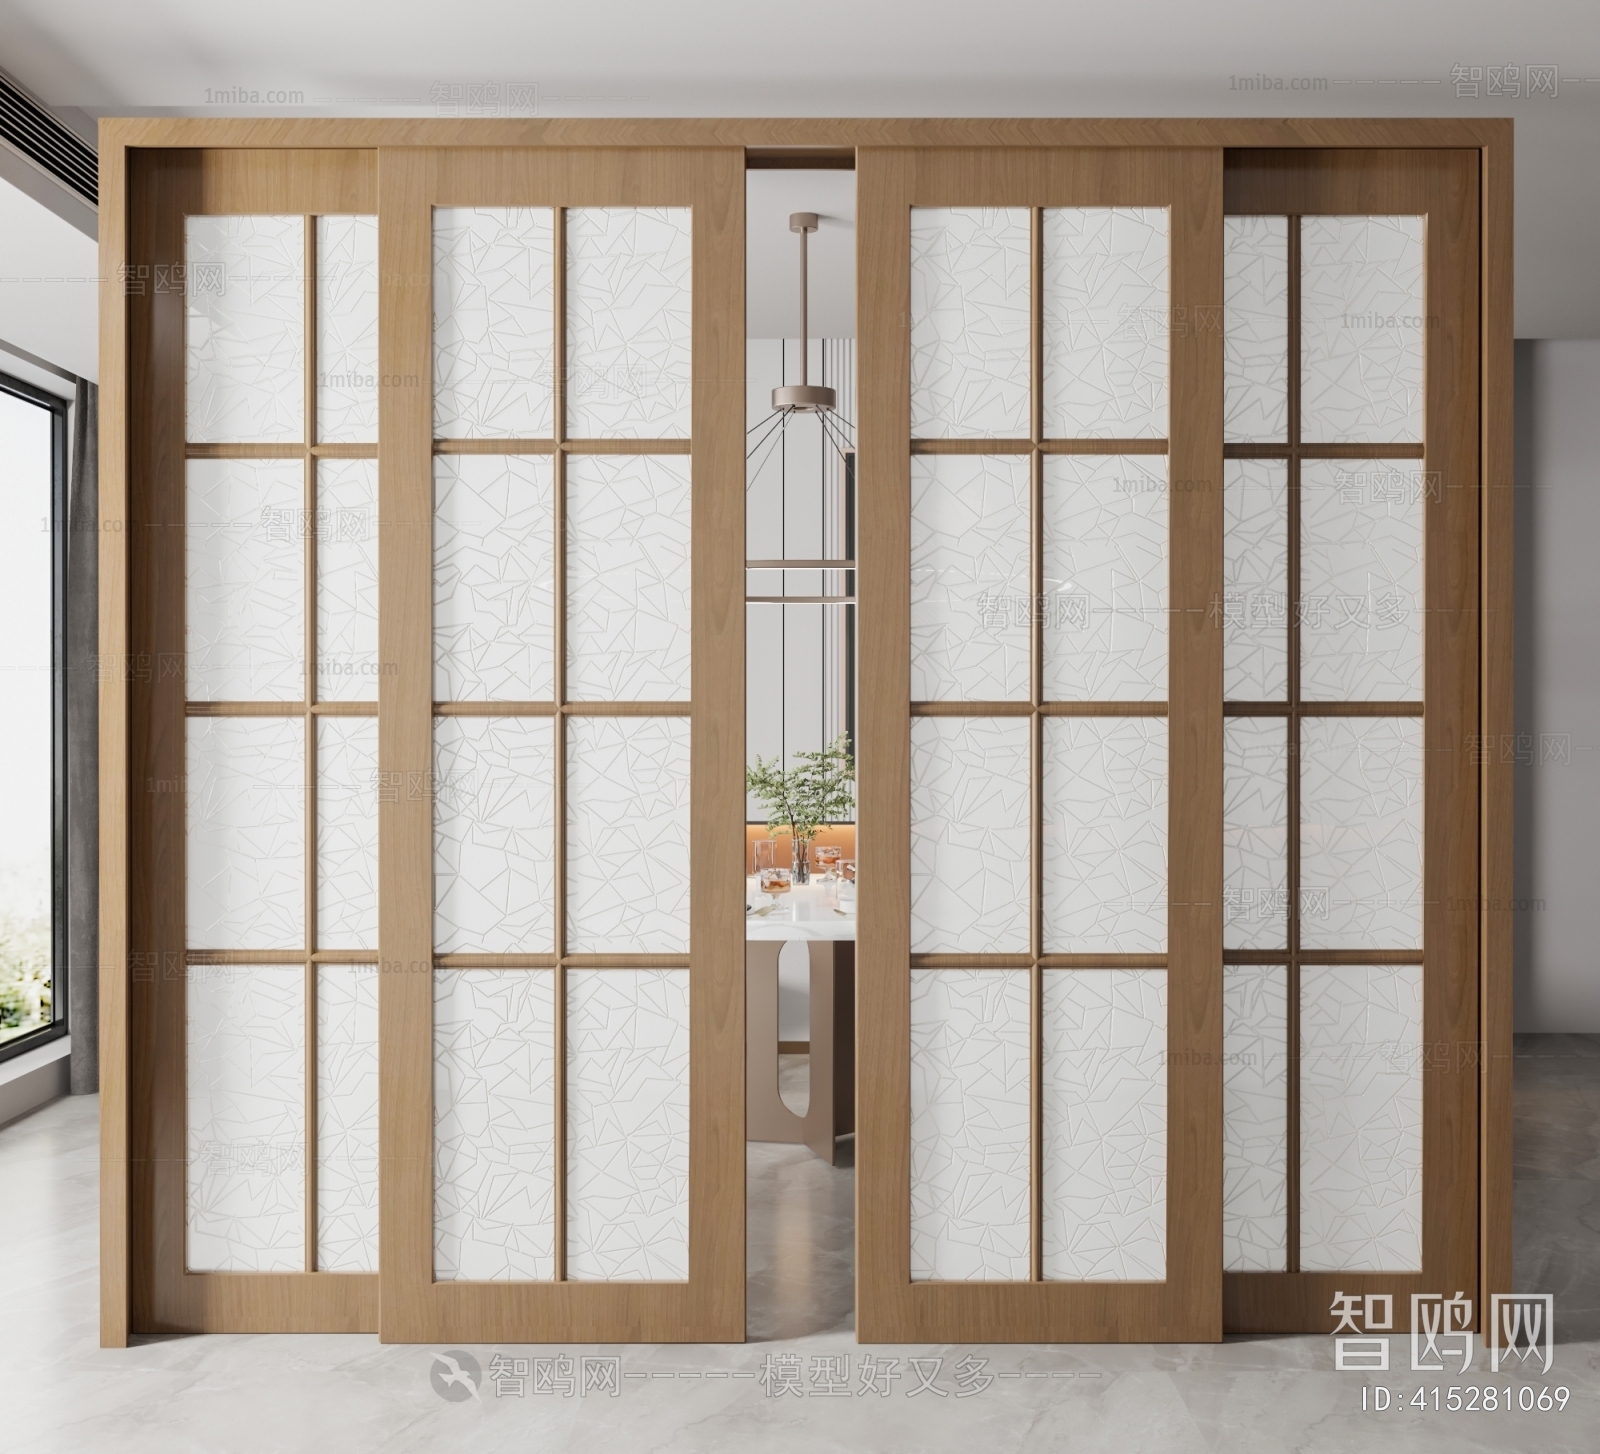 zoshomi abs Flora Bathroom Corner Mirror Cabinet with Storage 45 x 35 x 12  cm - White : Amazon.in: Home & Kitchen